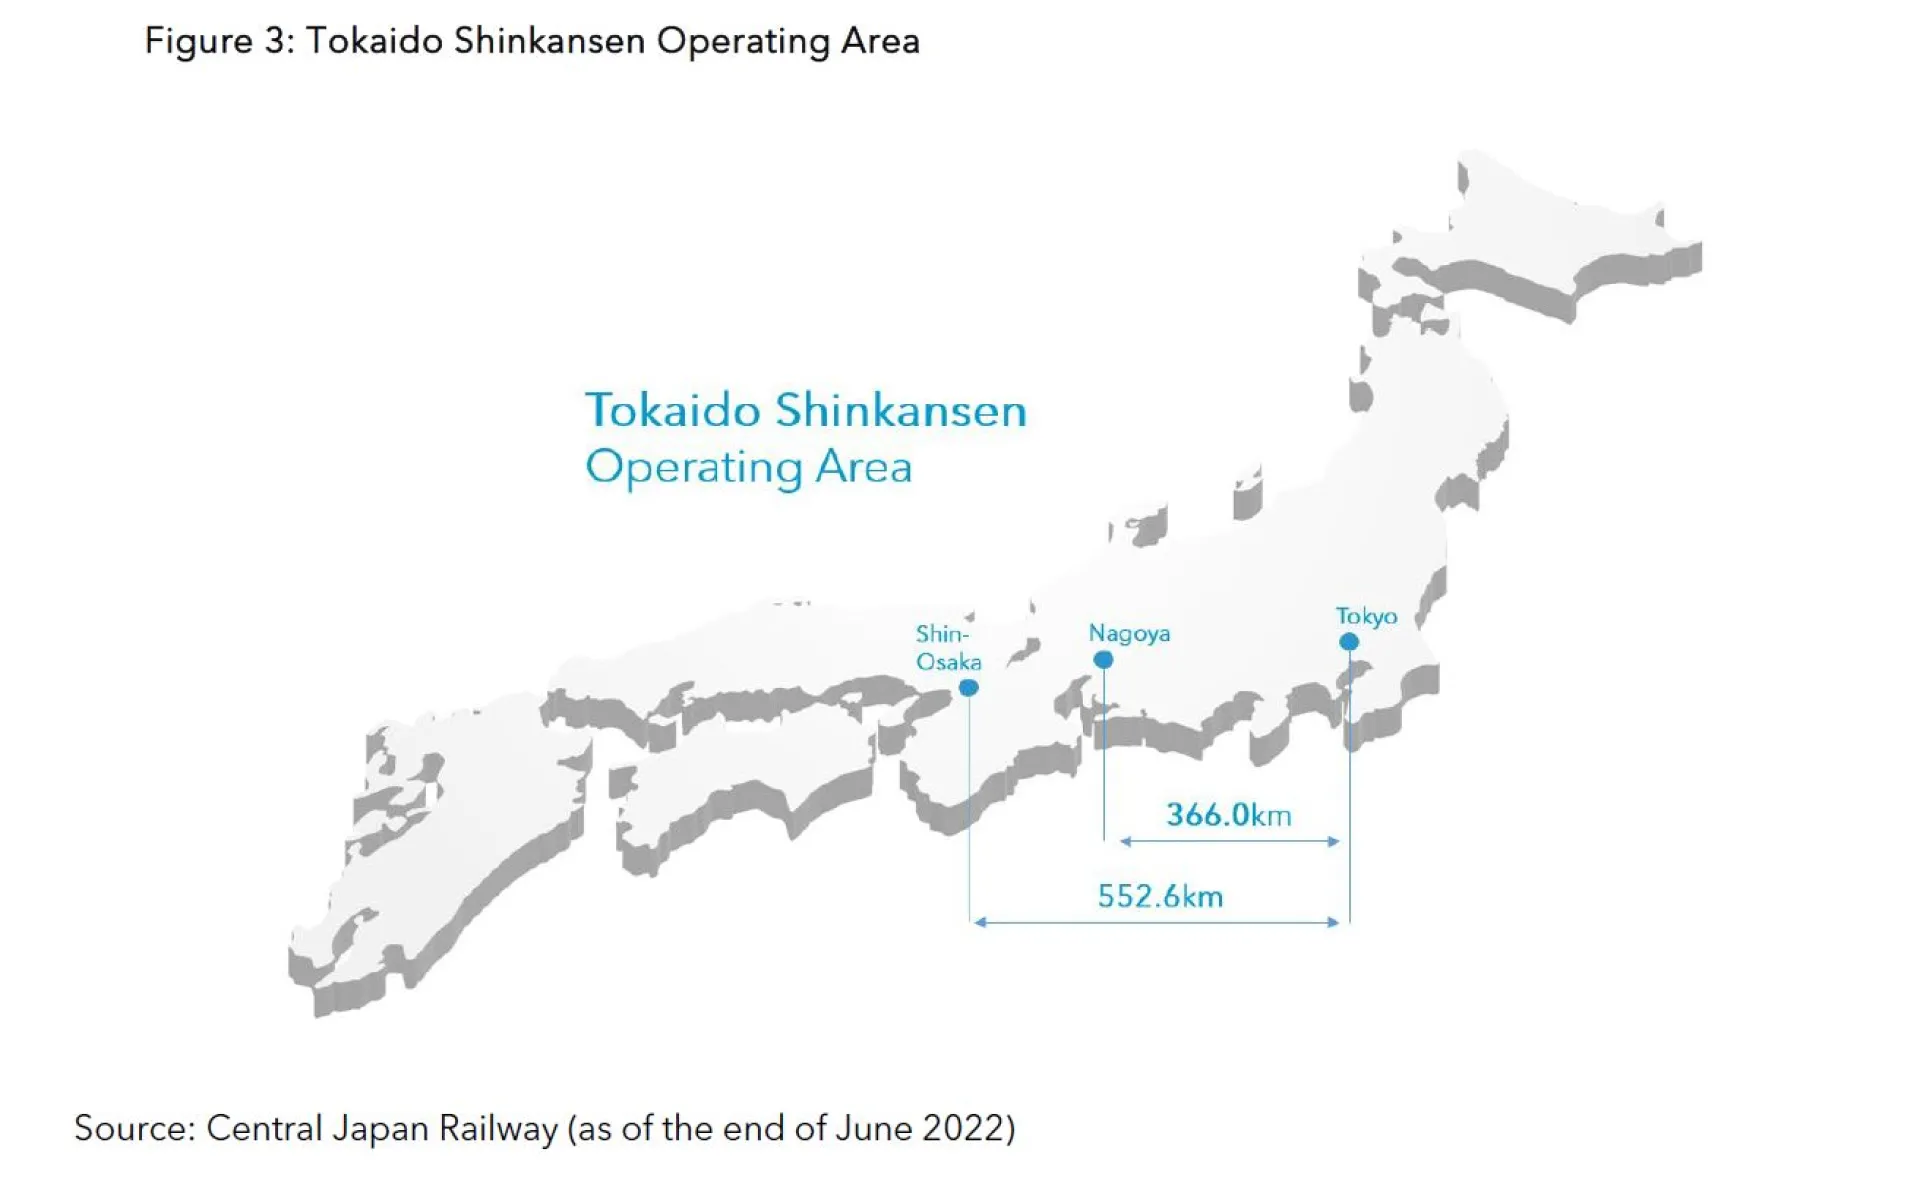 Figure 3 - Tokaido Shinkansen Operating Area